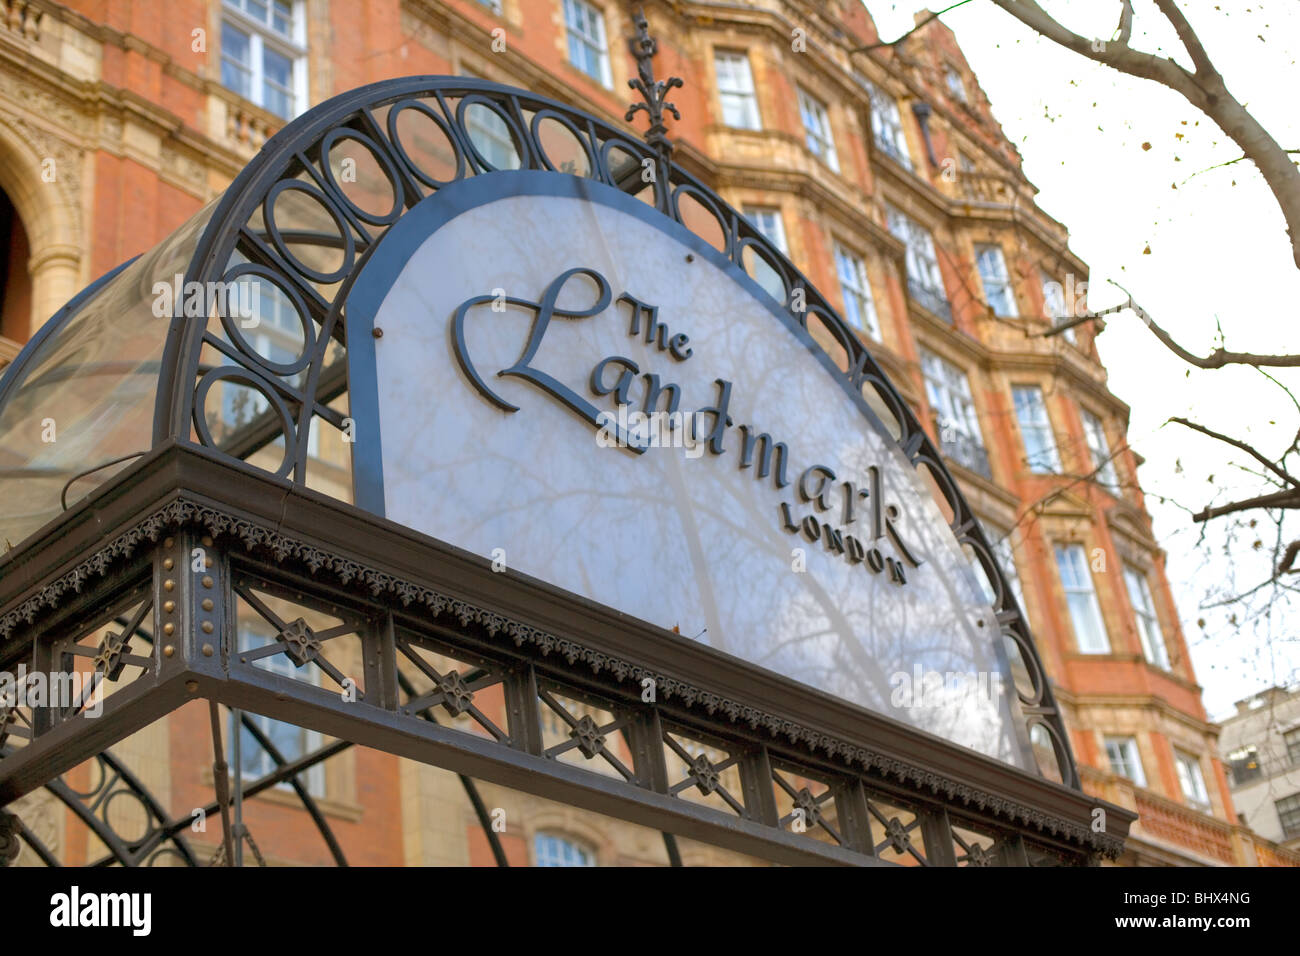 The Landmark Hotel, Marylebone Road, London, England, UK, Europe Stock Photo